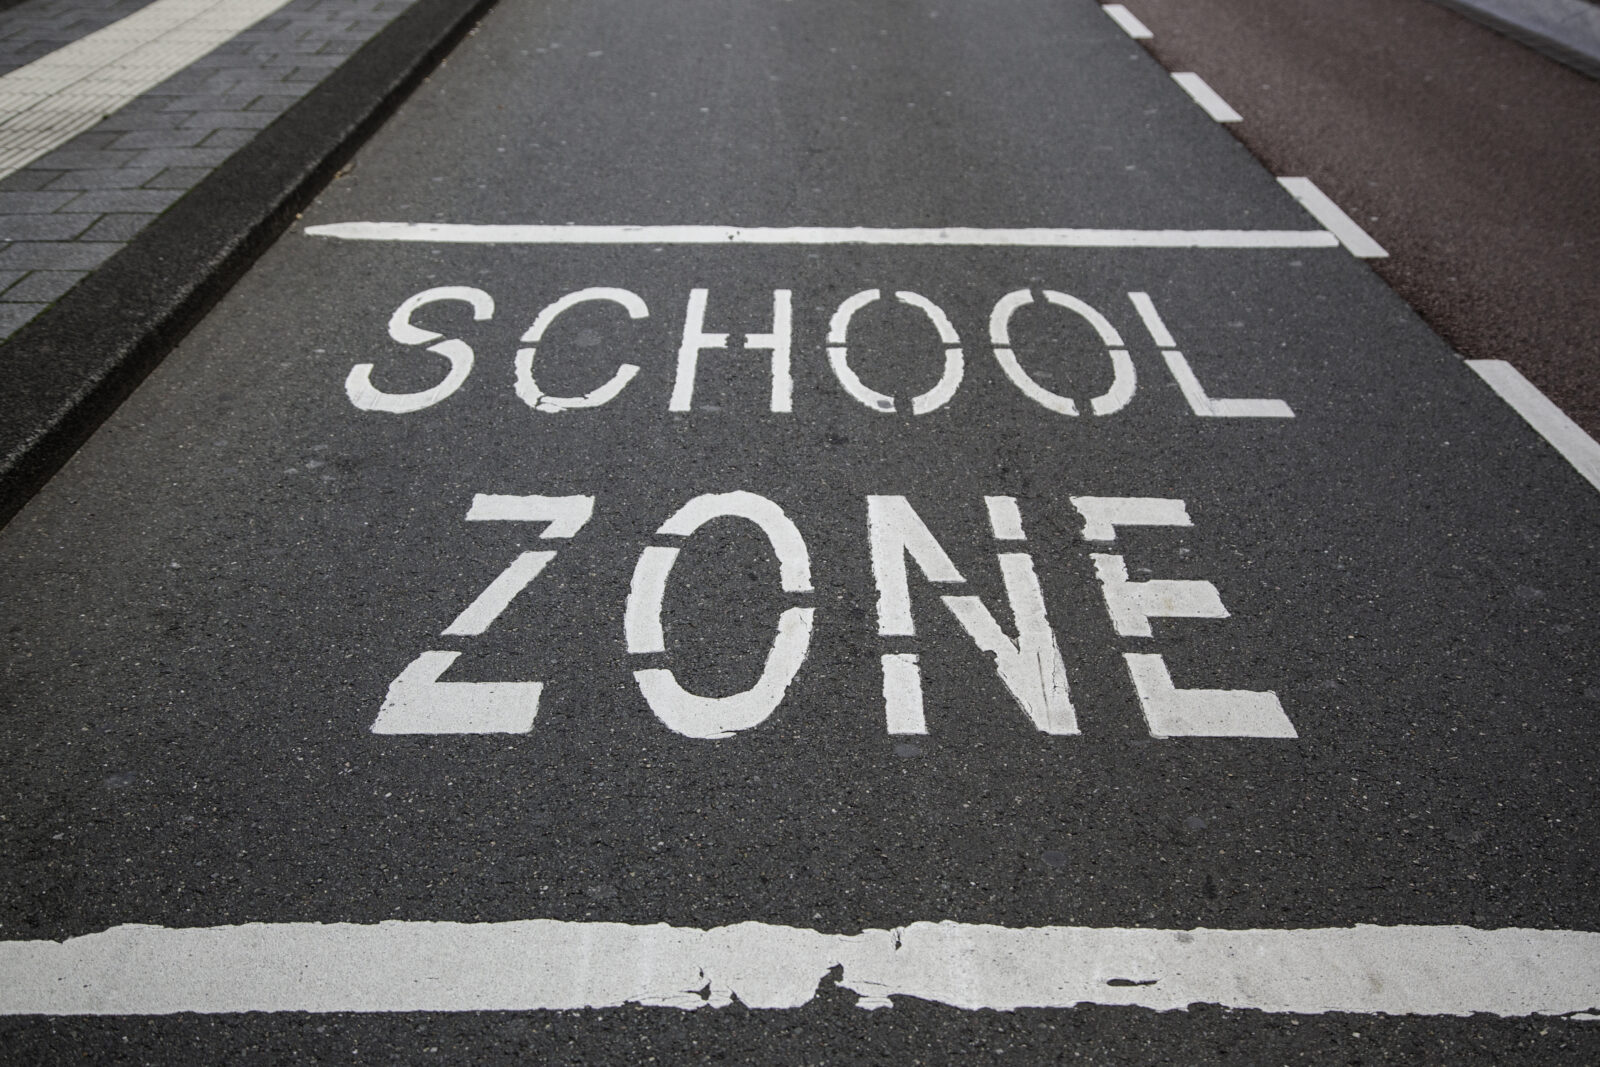 School zone written on street